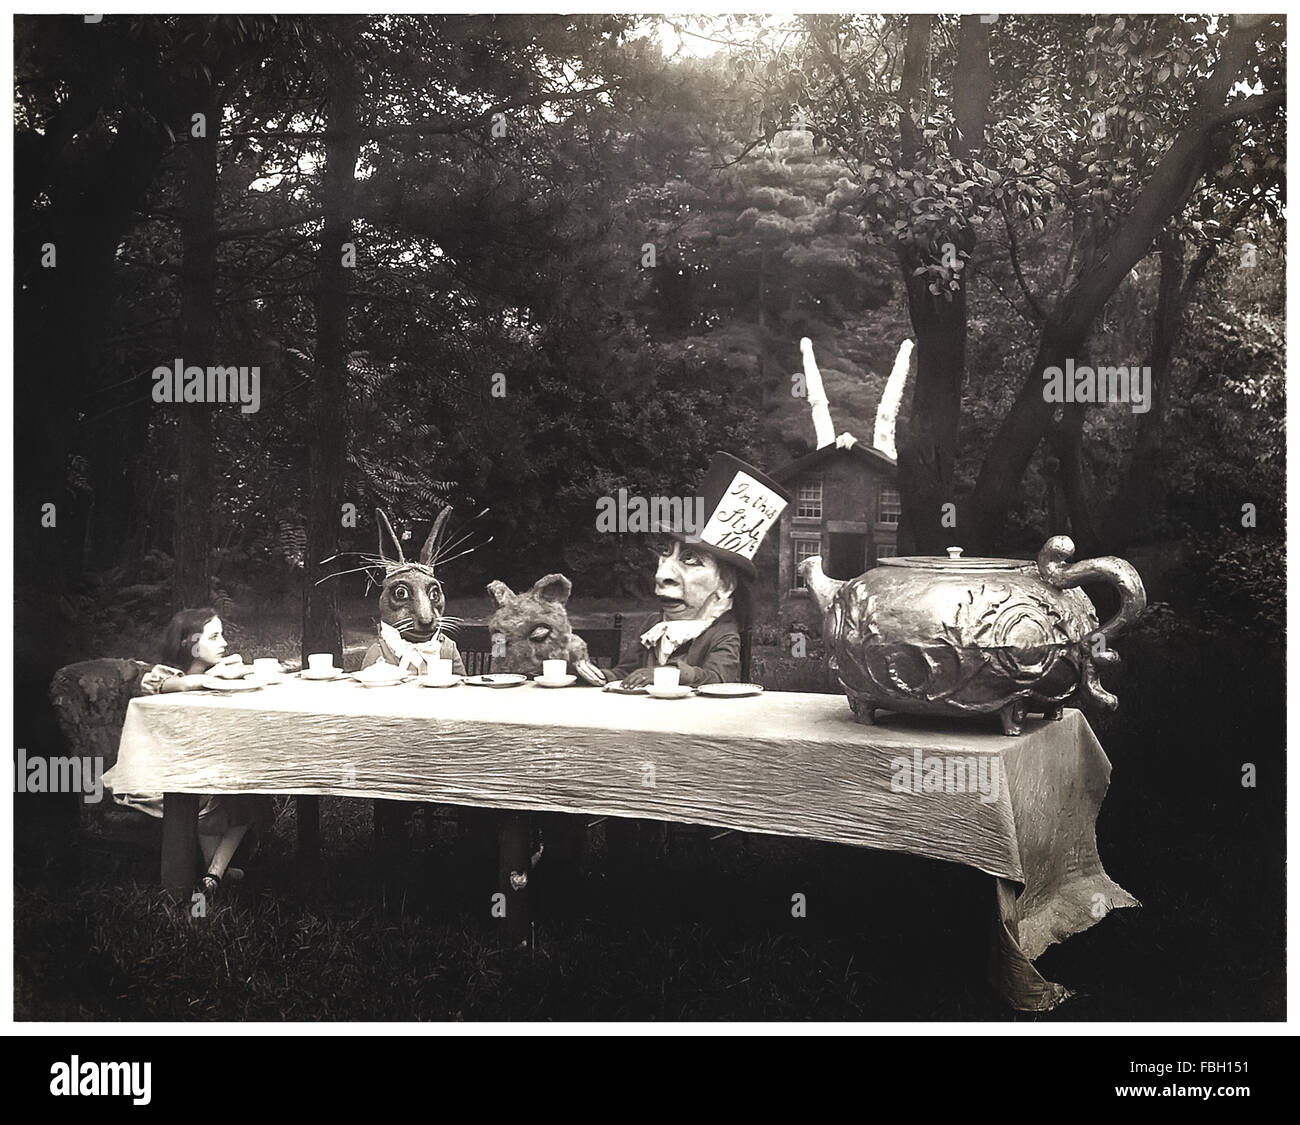 "The Mad Hatter Tea party" Szene von 1915 Stummfilm-Adaption von "Alice im Wunderland" von Lewis Carroll, Regie: W. Young. Das Foto zeigt von links nach rechts: Viola Savoy als Alice, Herbert Rice als das weiße Kaninchen, Louis Merkle als das Murmelthier und William Tilden als Mad Hatter. Siehe Beschreibung für mehr Informationen. Stockfoto